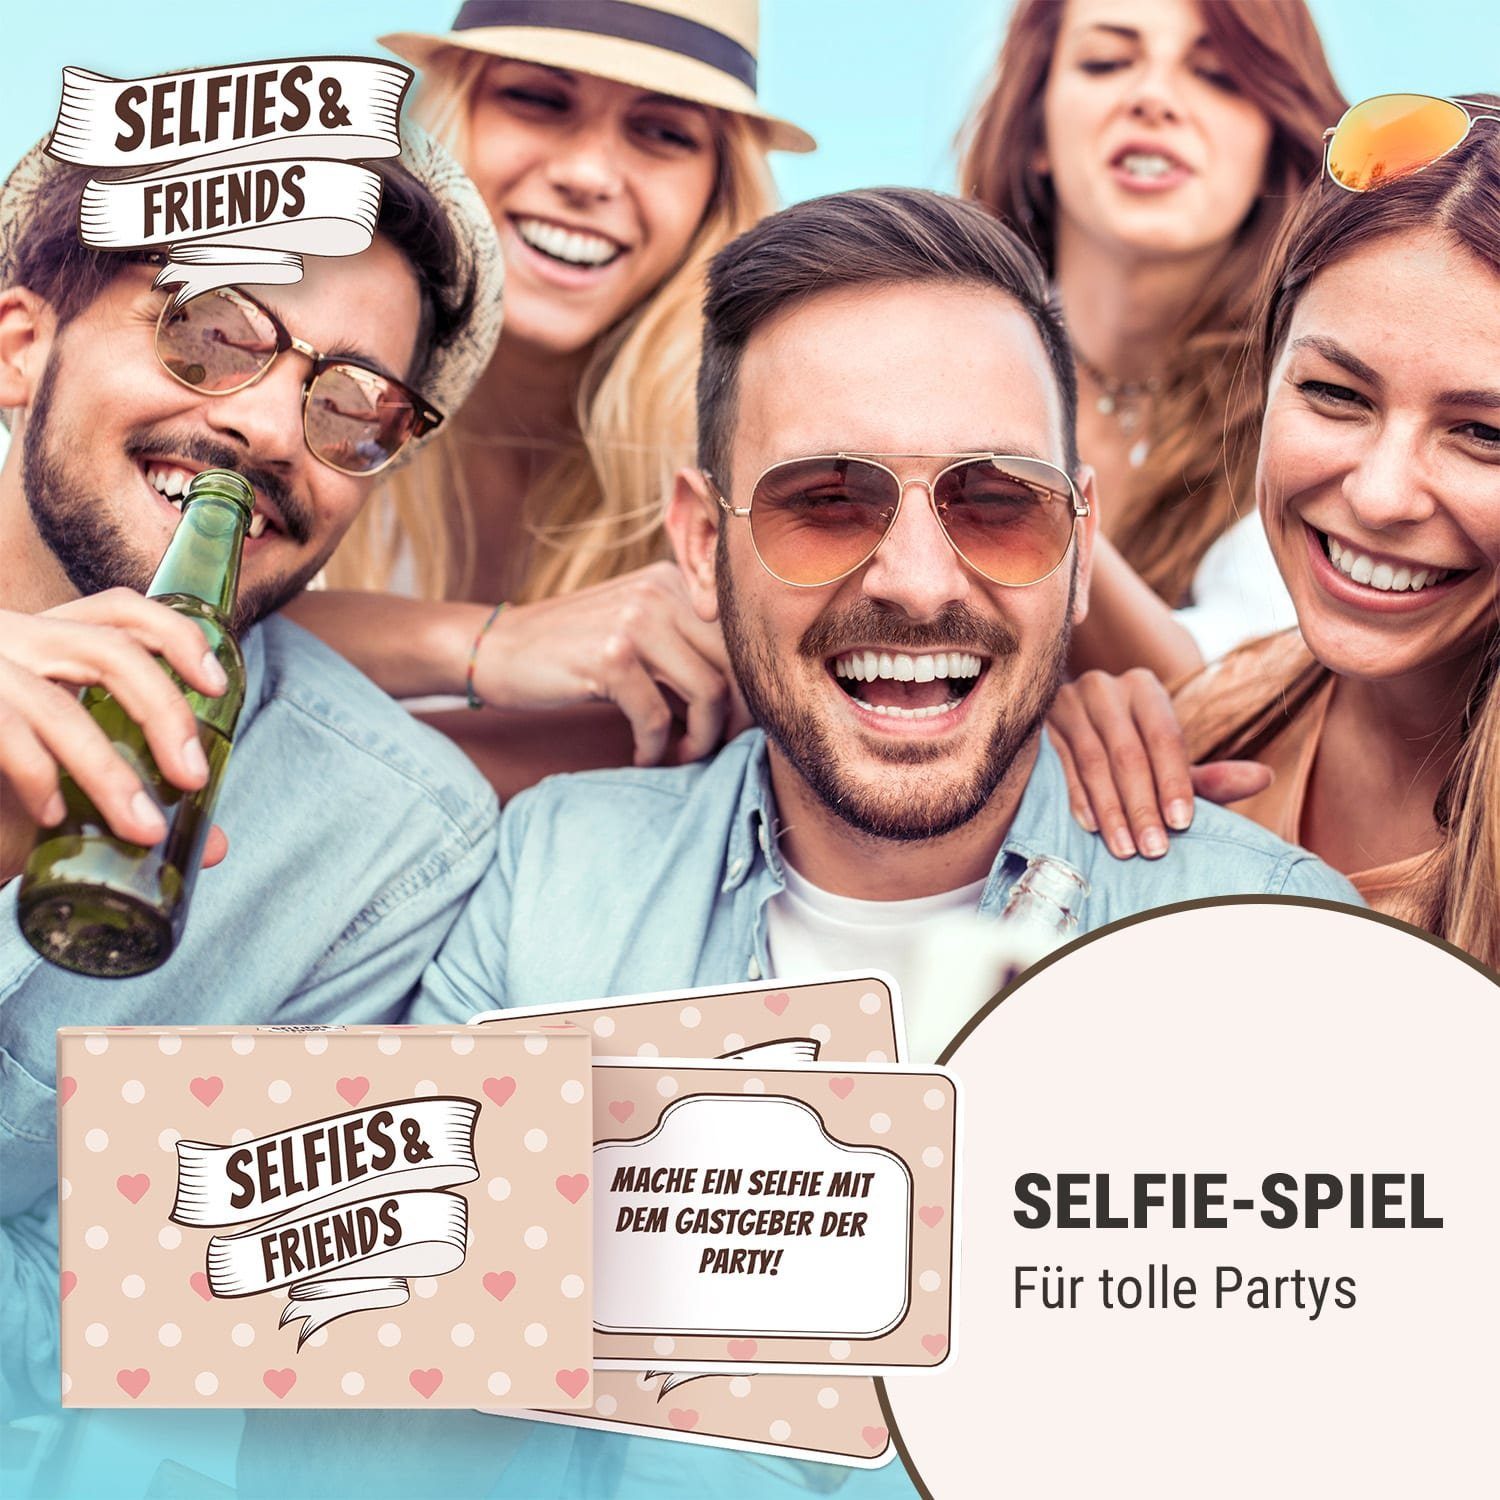 Selfies&Friends Spiel, Spielehelden